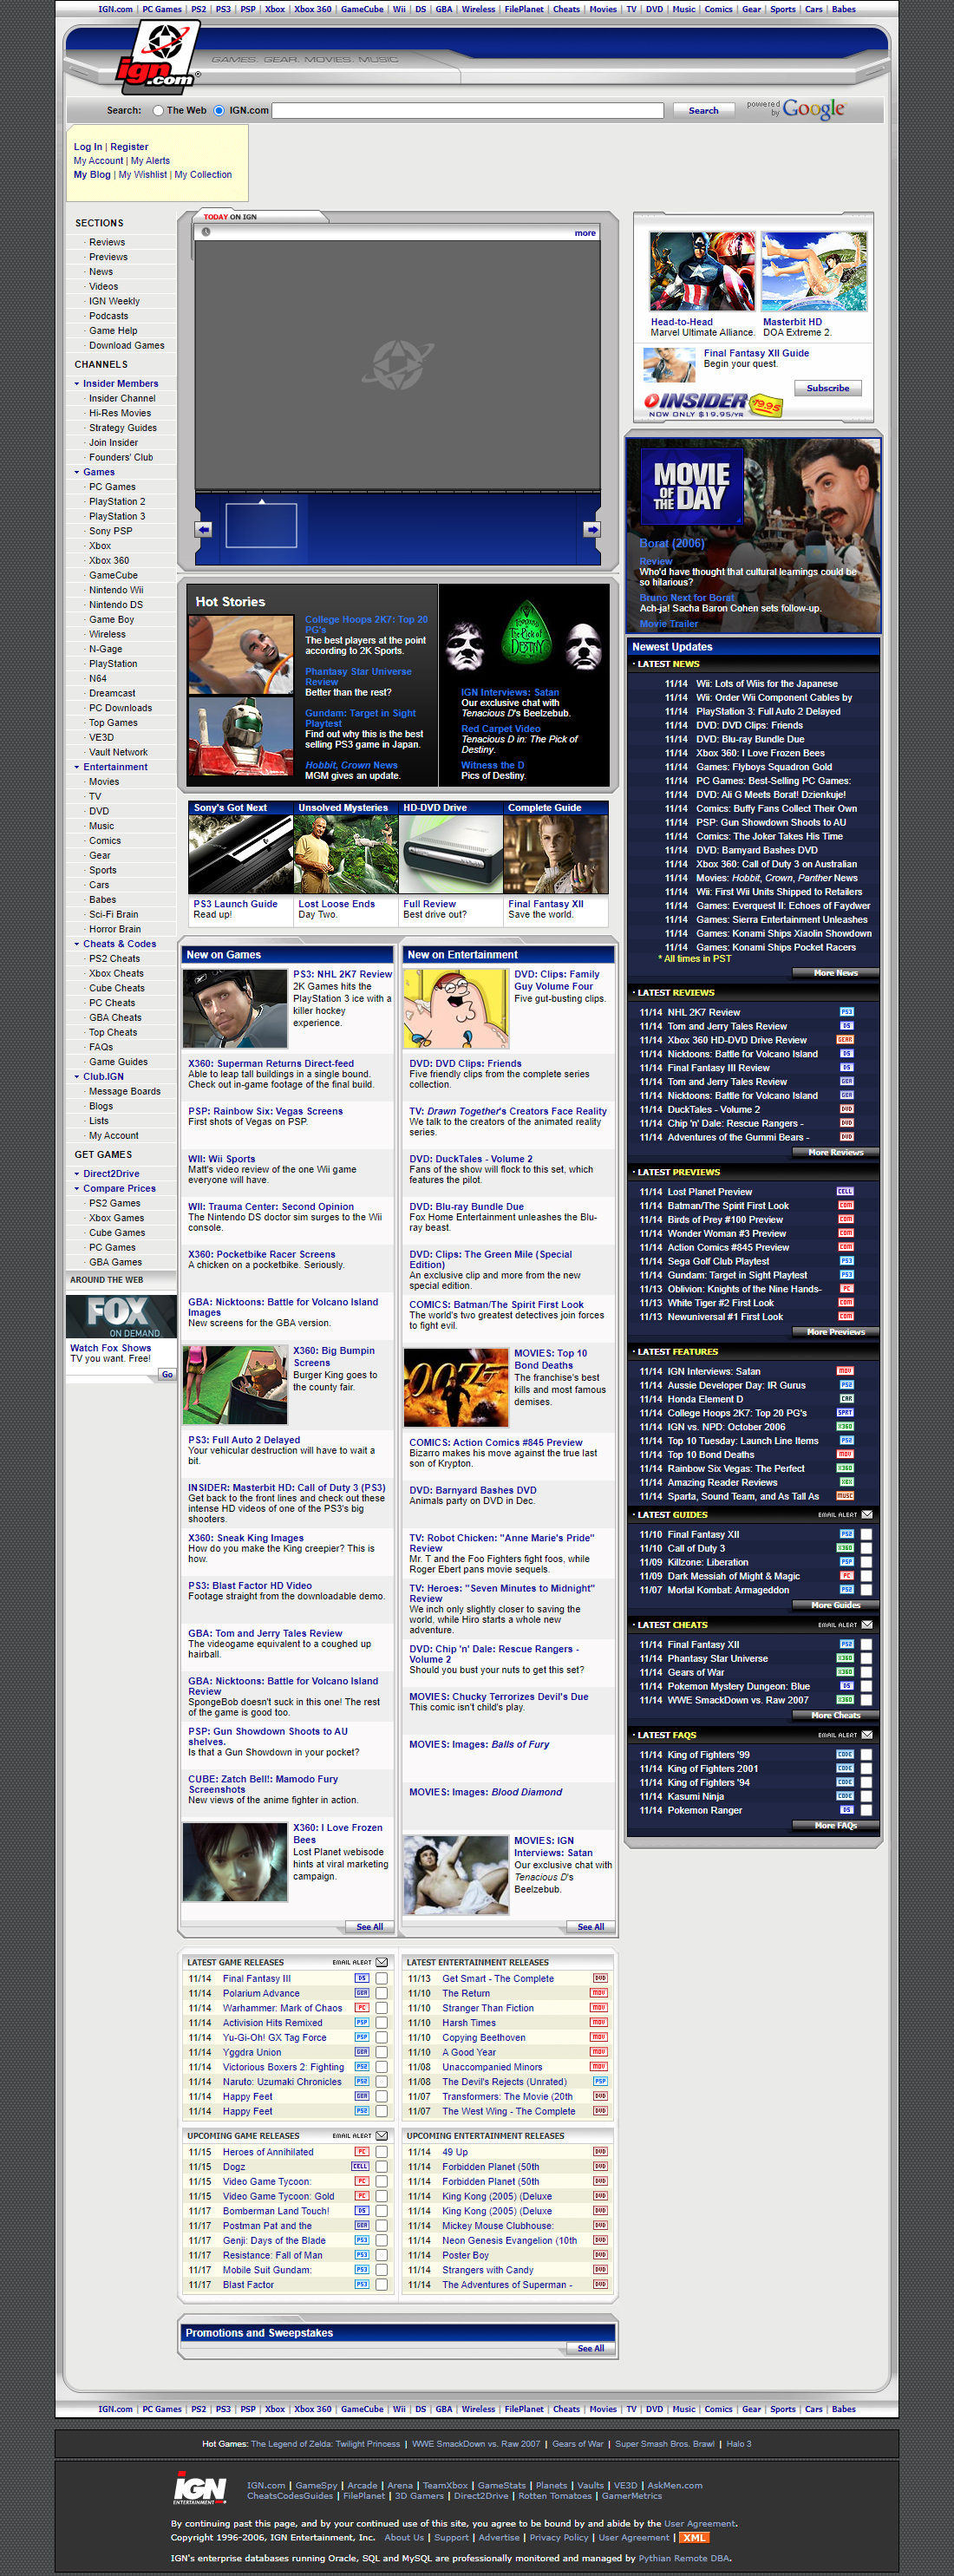 IGN website in 2006